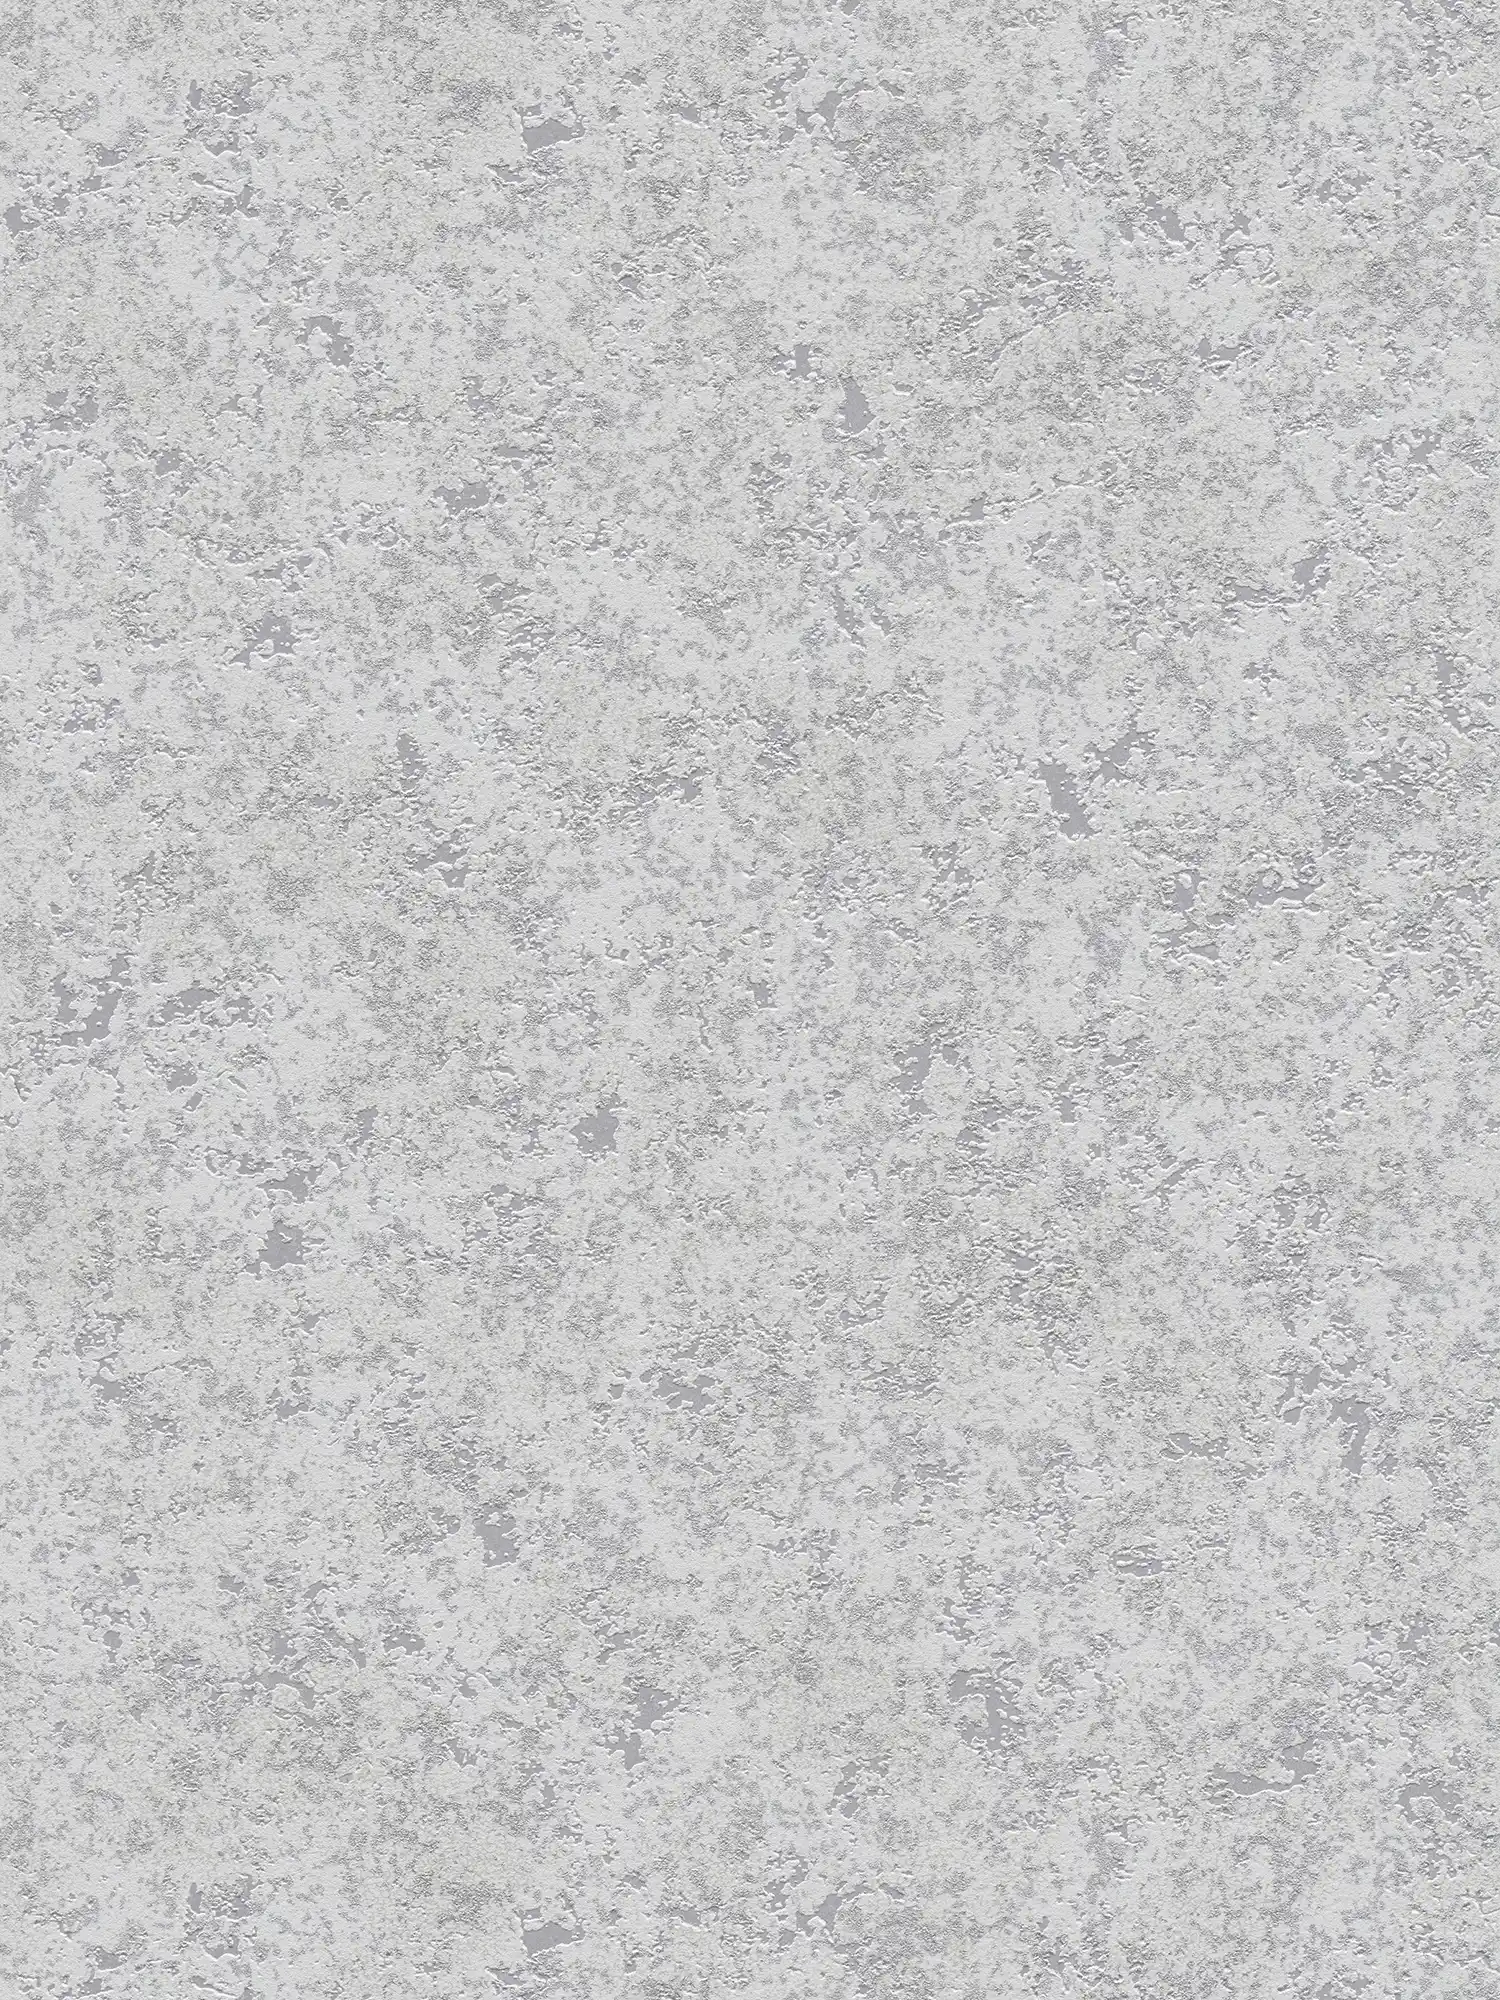 Industrial design wallpaper with plaster look - grey
